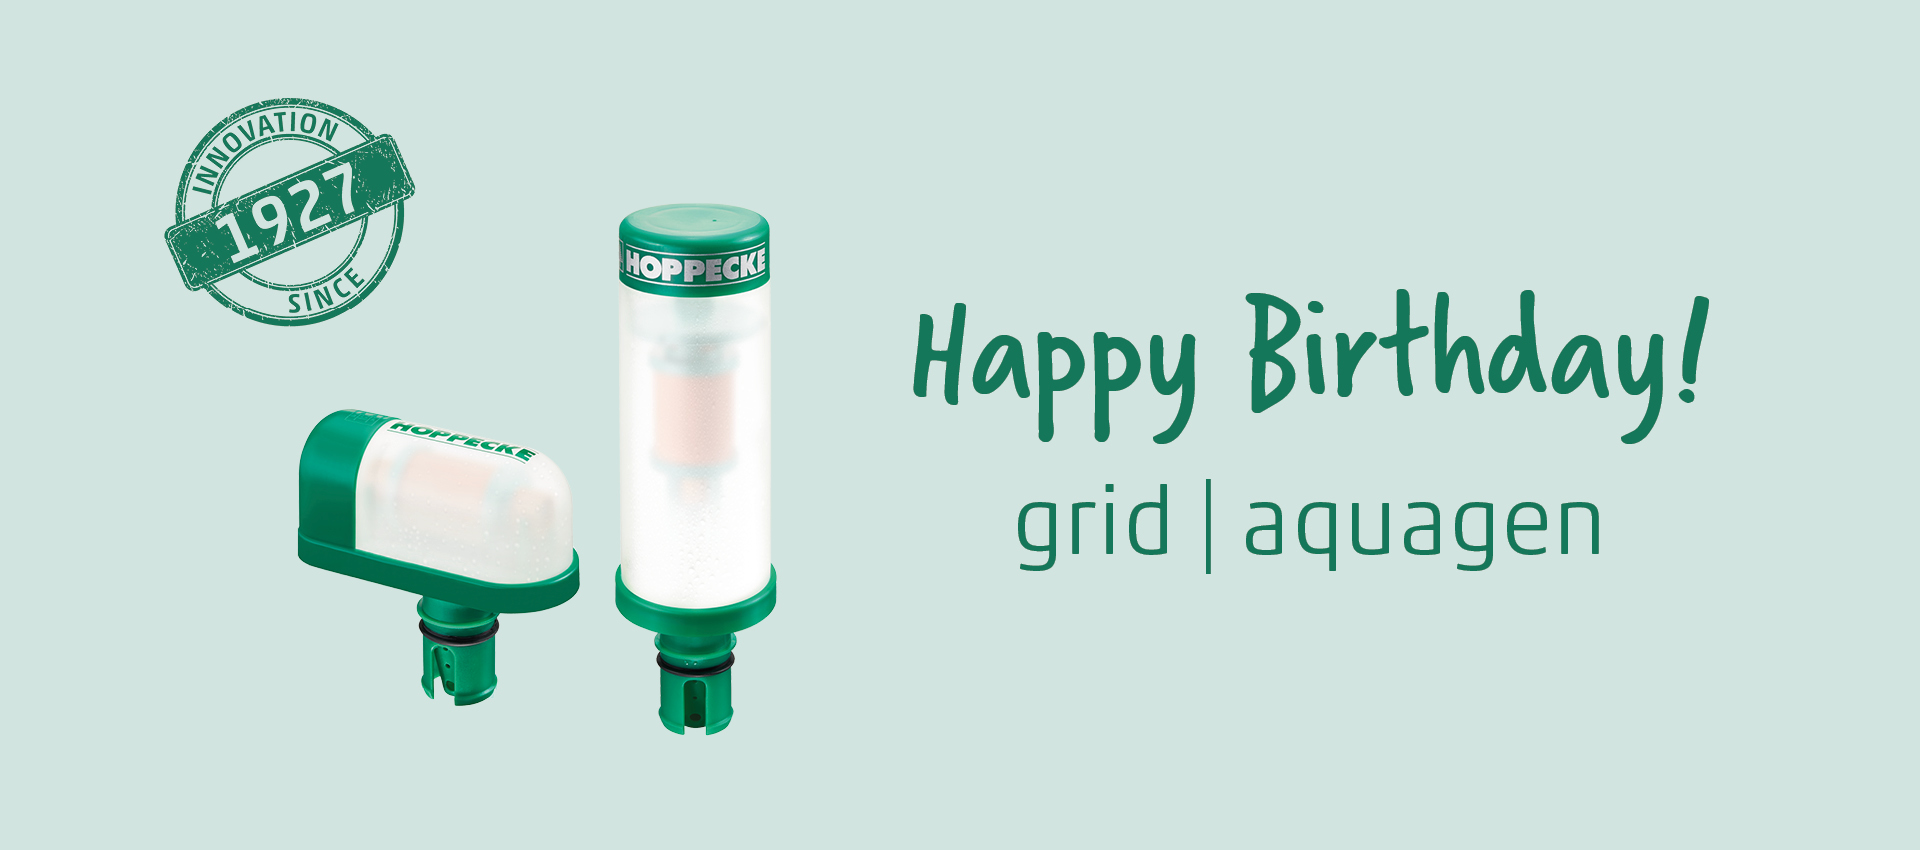 Happy Birthday grid | aquagen! - Freitag, 12.11.2021